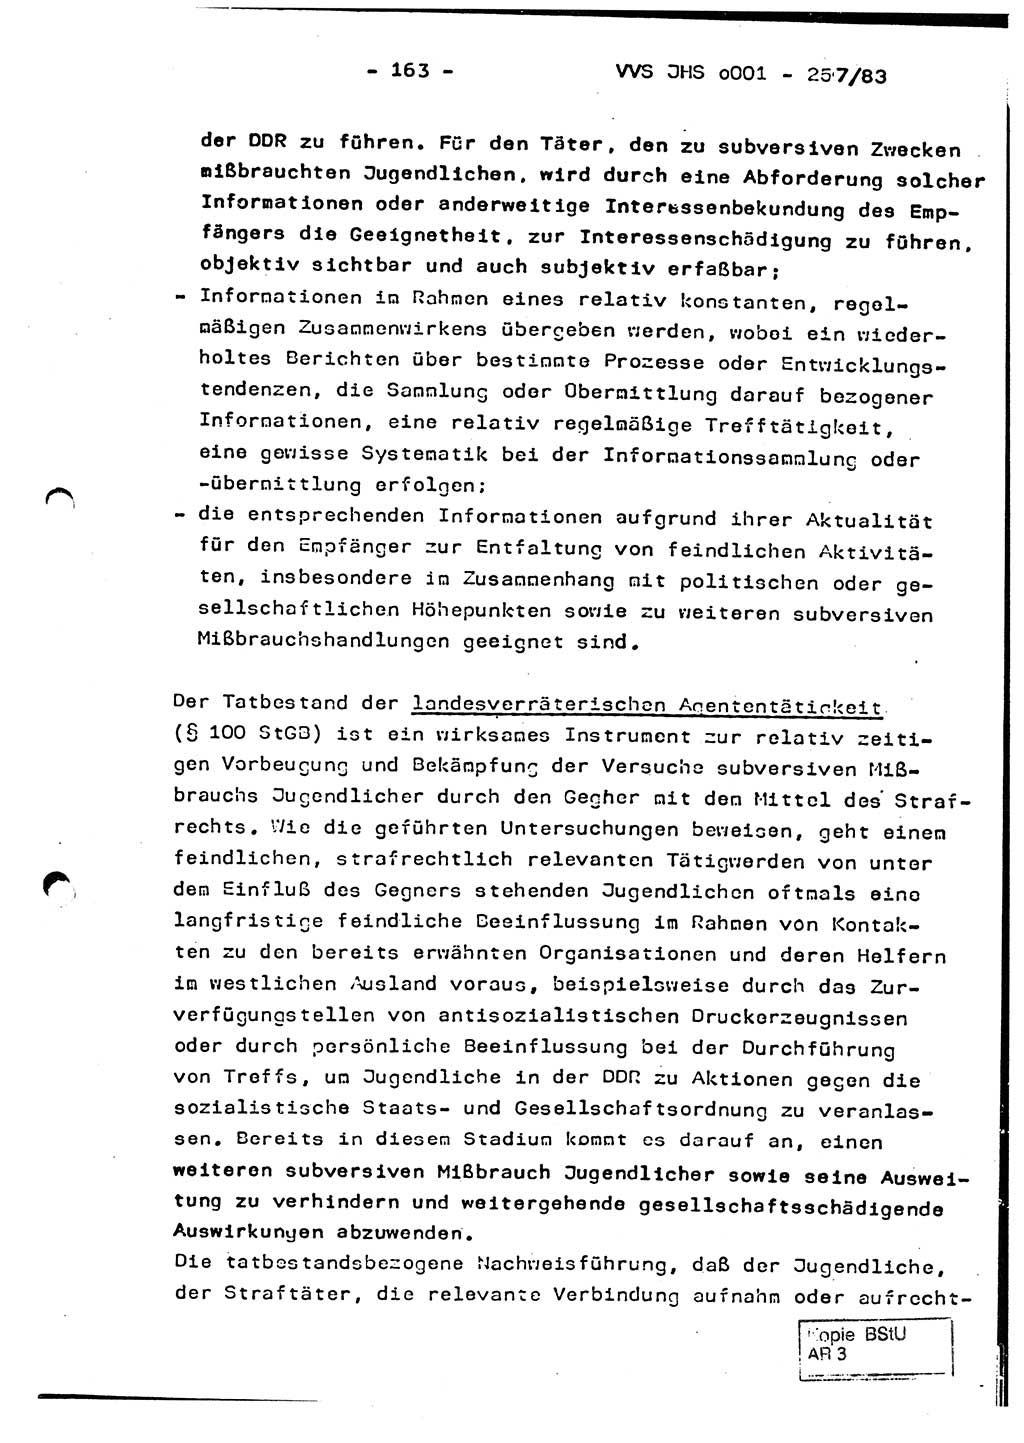 Dissertation, Oberst Helmut Lubas (BV Mdg.), Oberstleutnant Manfred Eschberger (HA IX), Oberleutnant Hans-Jürgen Ludwig (JHS), Ministerium für Staatssicherheit (MfS) [Deutsche Demokratische Republik (DDR)], Juristische Hochschule (JHS), Vertrauliche Verschlußsache (VVS) o001-257/83, Potsdam 1983, Seite 163 (Diss. MfS DDR JHS VVS o001-257/83 1983, S. 163)